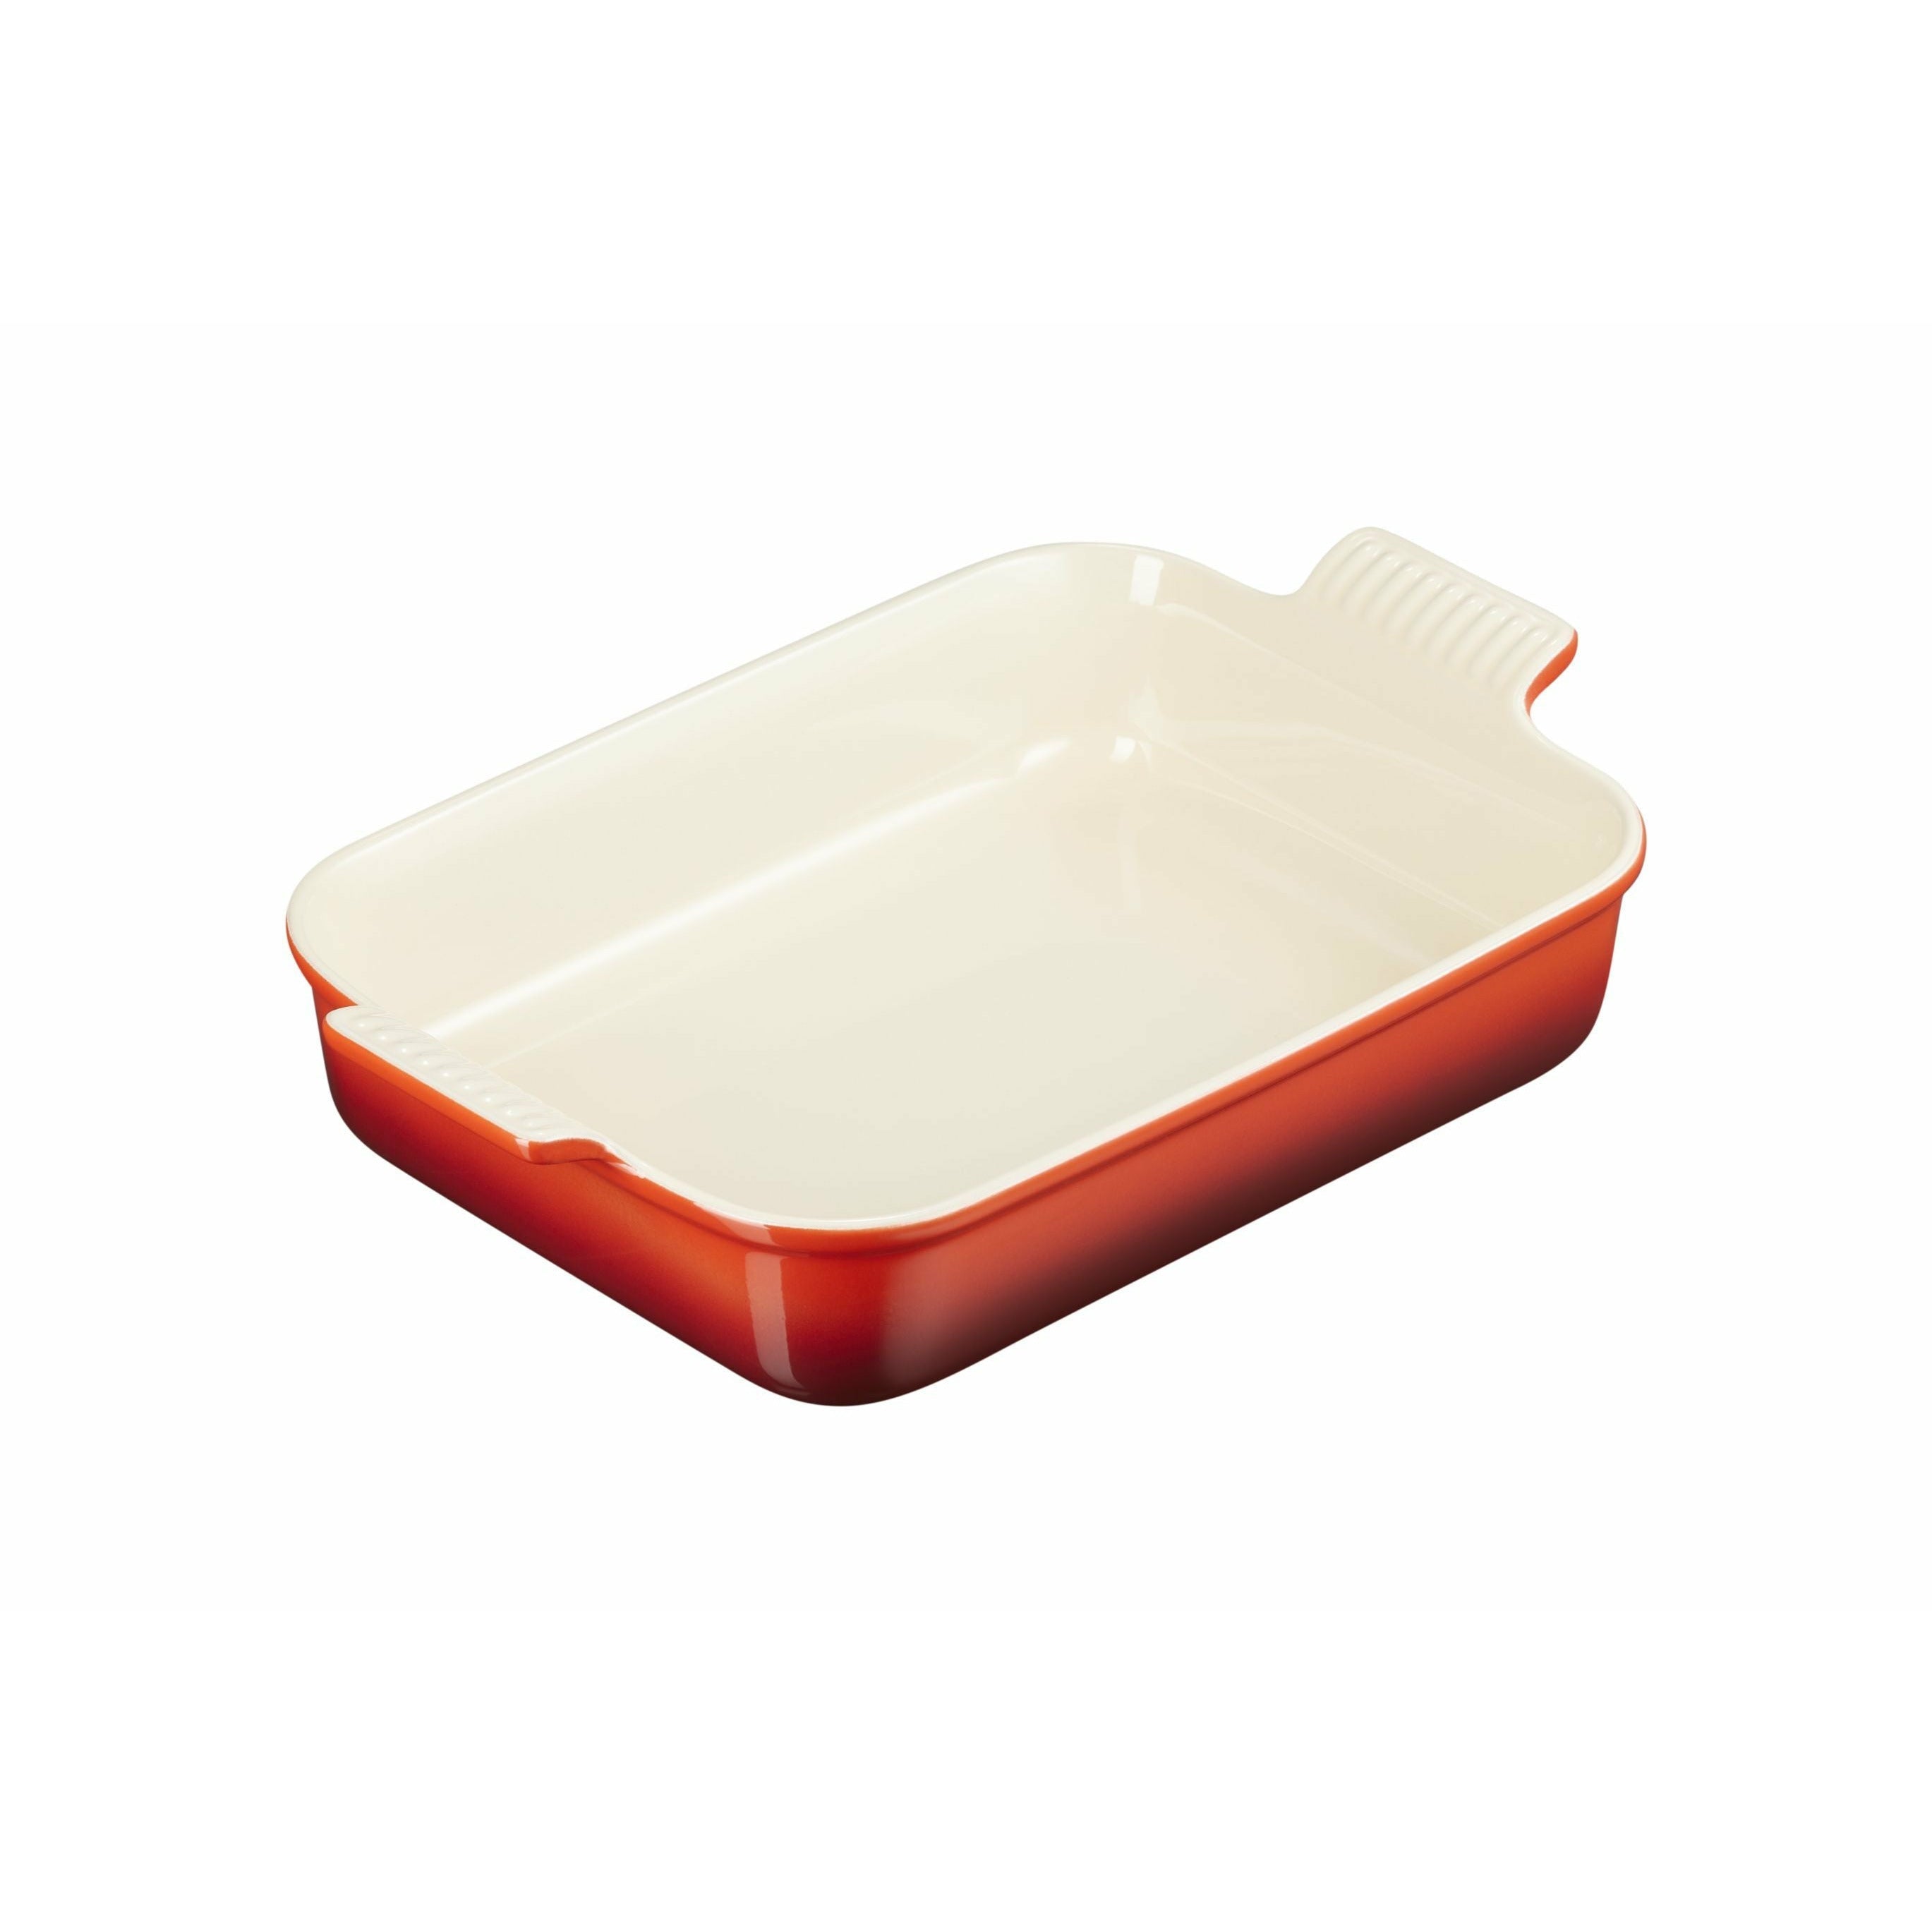 Le Creuset Tradition de vaisselle rectangulaire 32 cm, rouge cerise